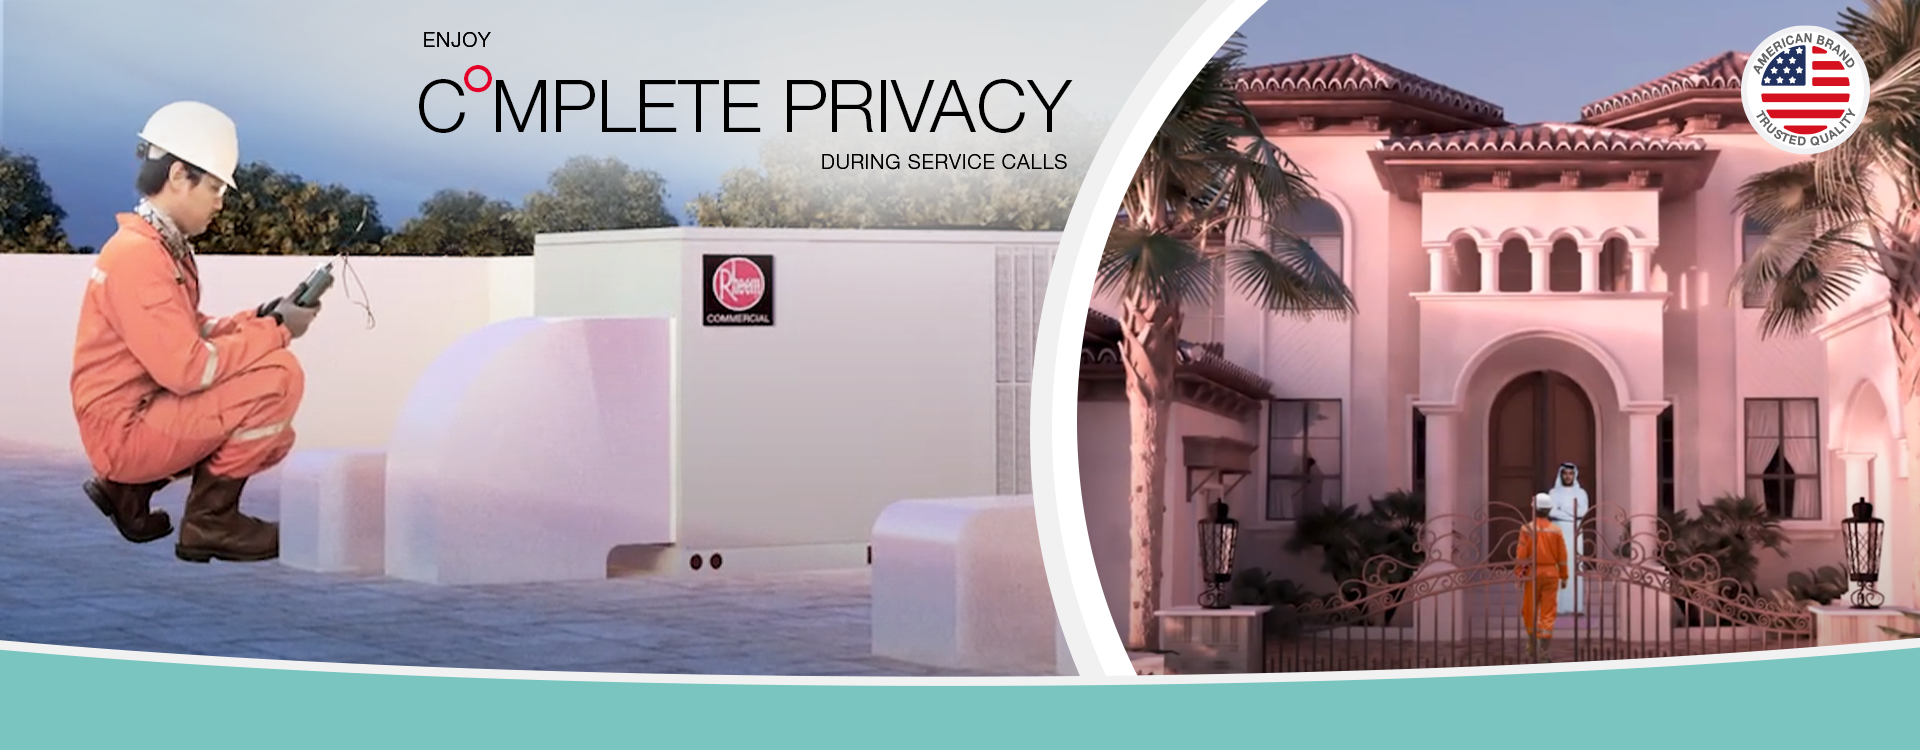 villa – enjoy complete privacy